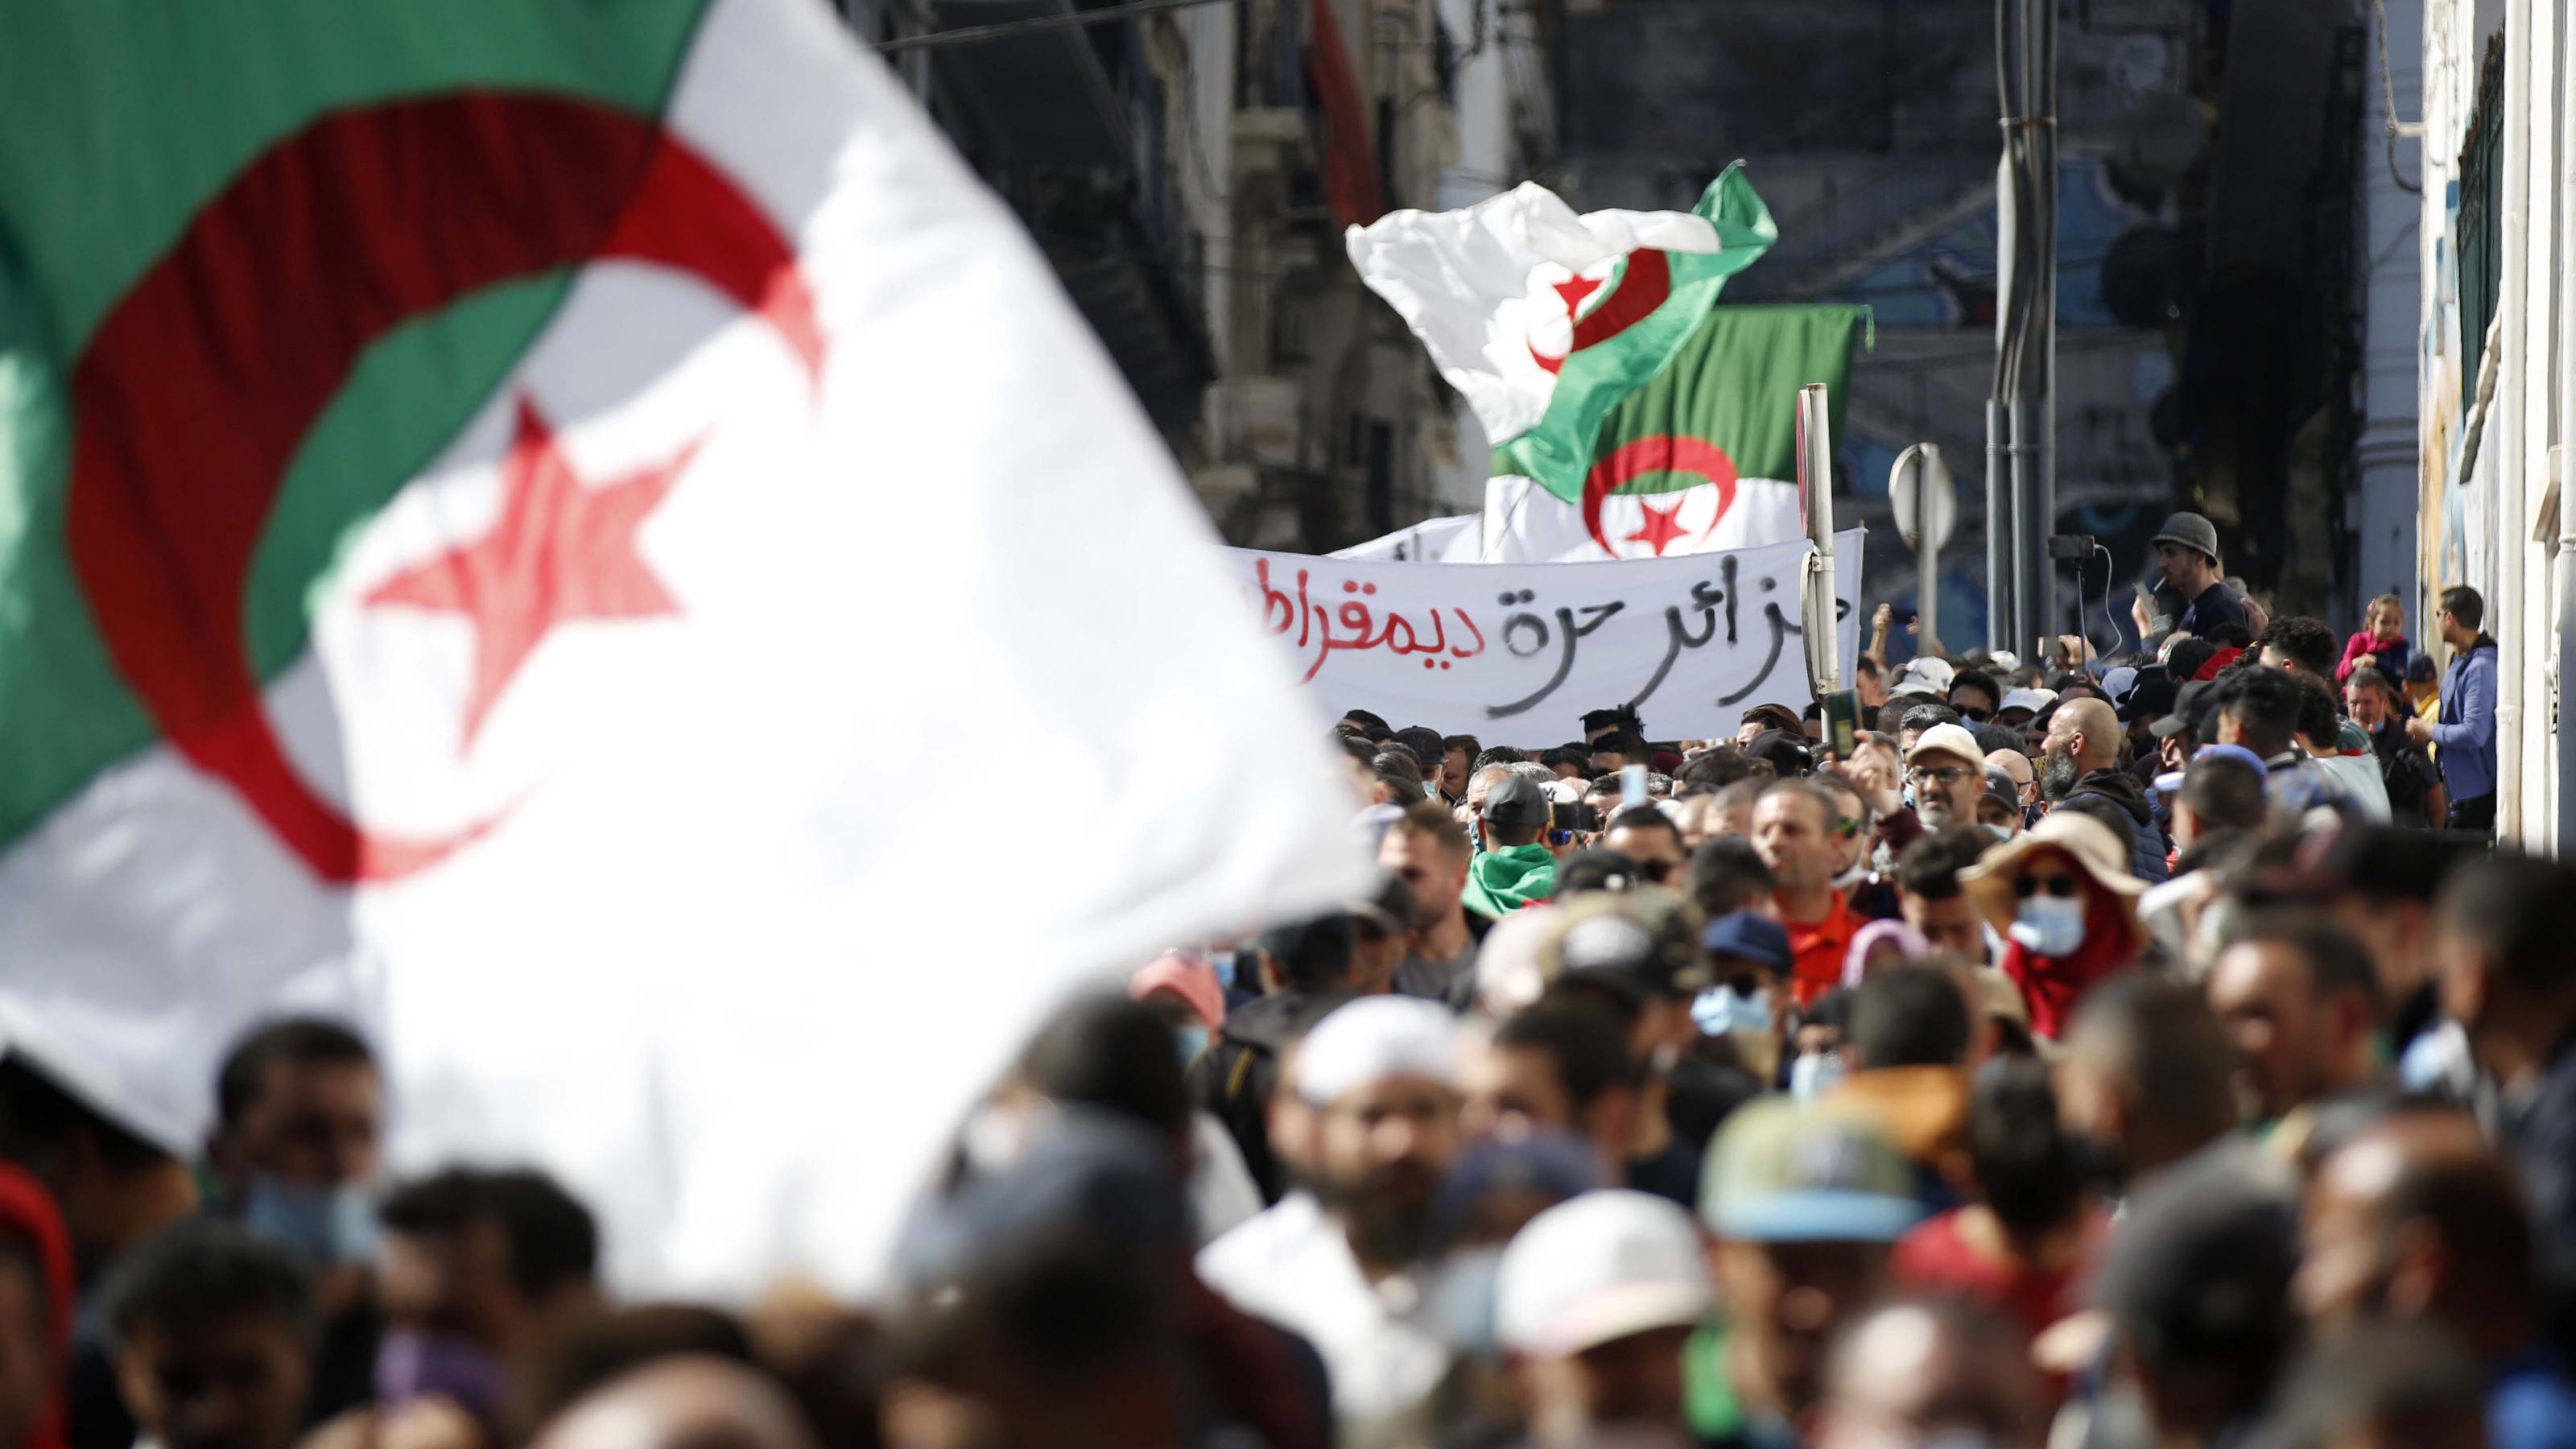 Demonstranten in einer engen Straße in Algier schwenken große algerische Fahnen. Im Hintergrund ist ein arabischsprachiges Transparent zu sehen.